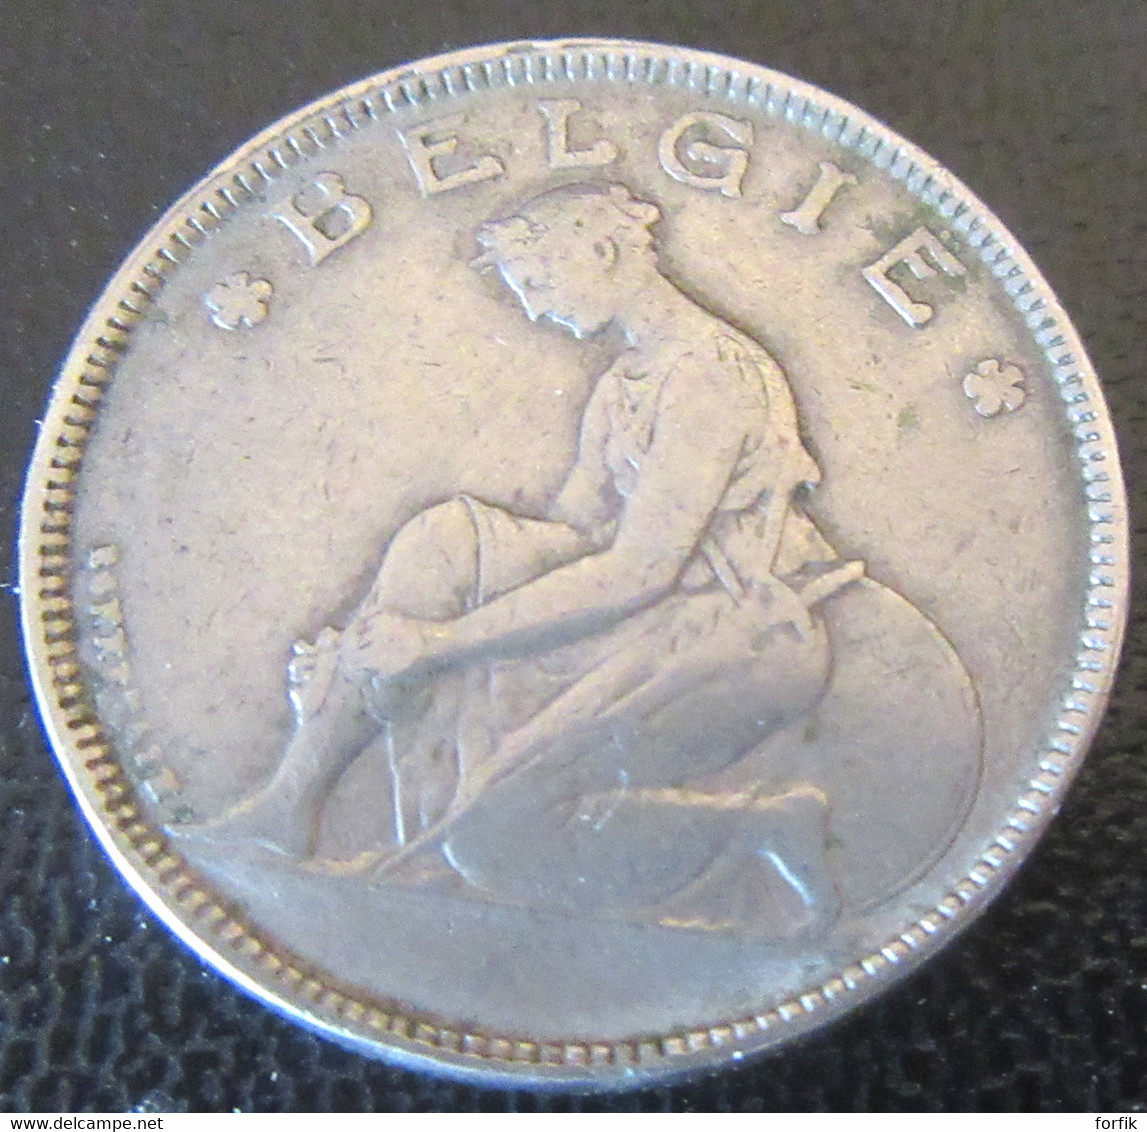 Belgique - Monnaie Bon Pour 2 Francs (Goed Voor 2 F) 1923 - Légende En Néerlandais - 2 Francos